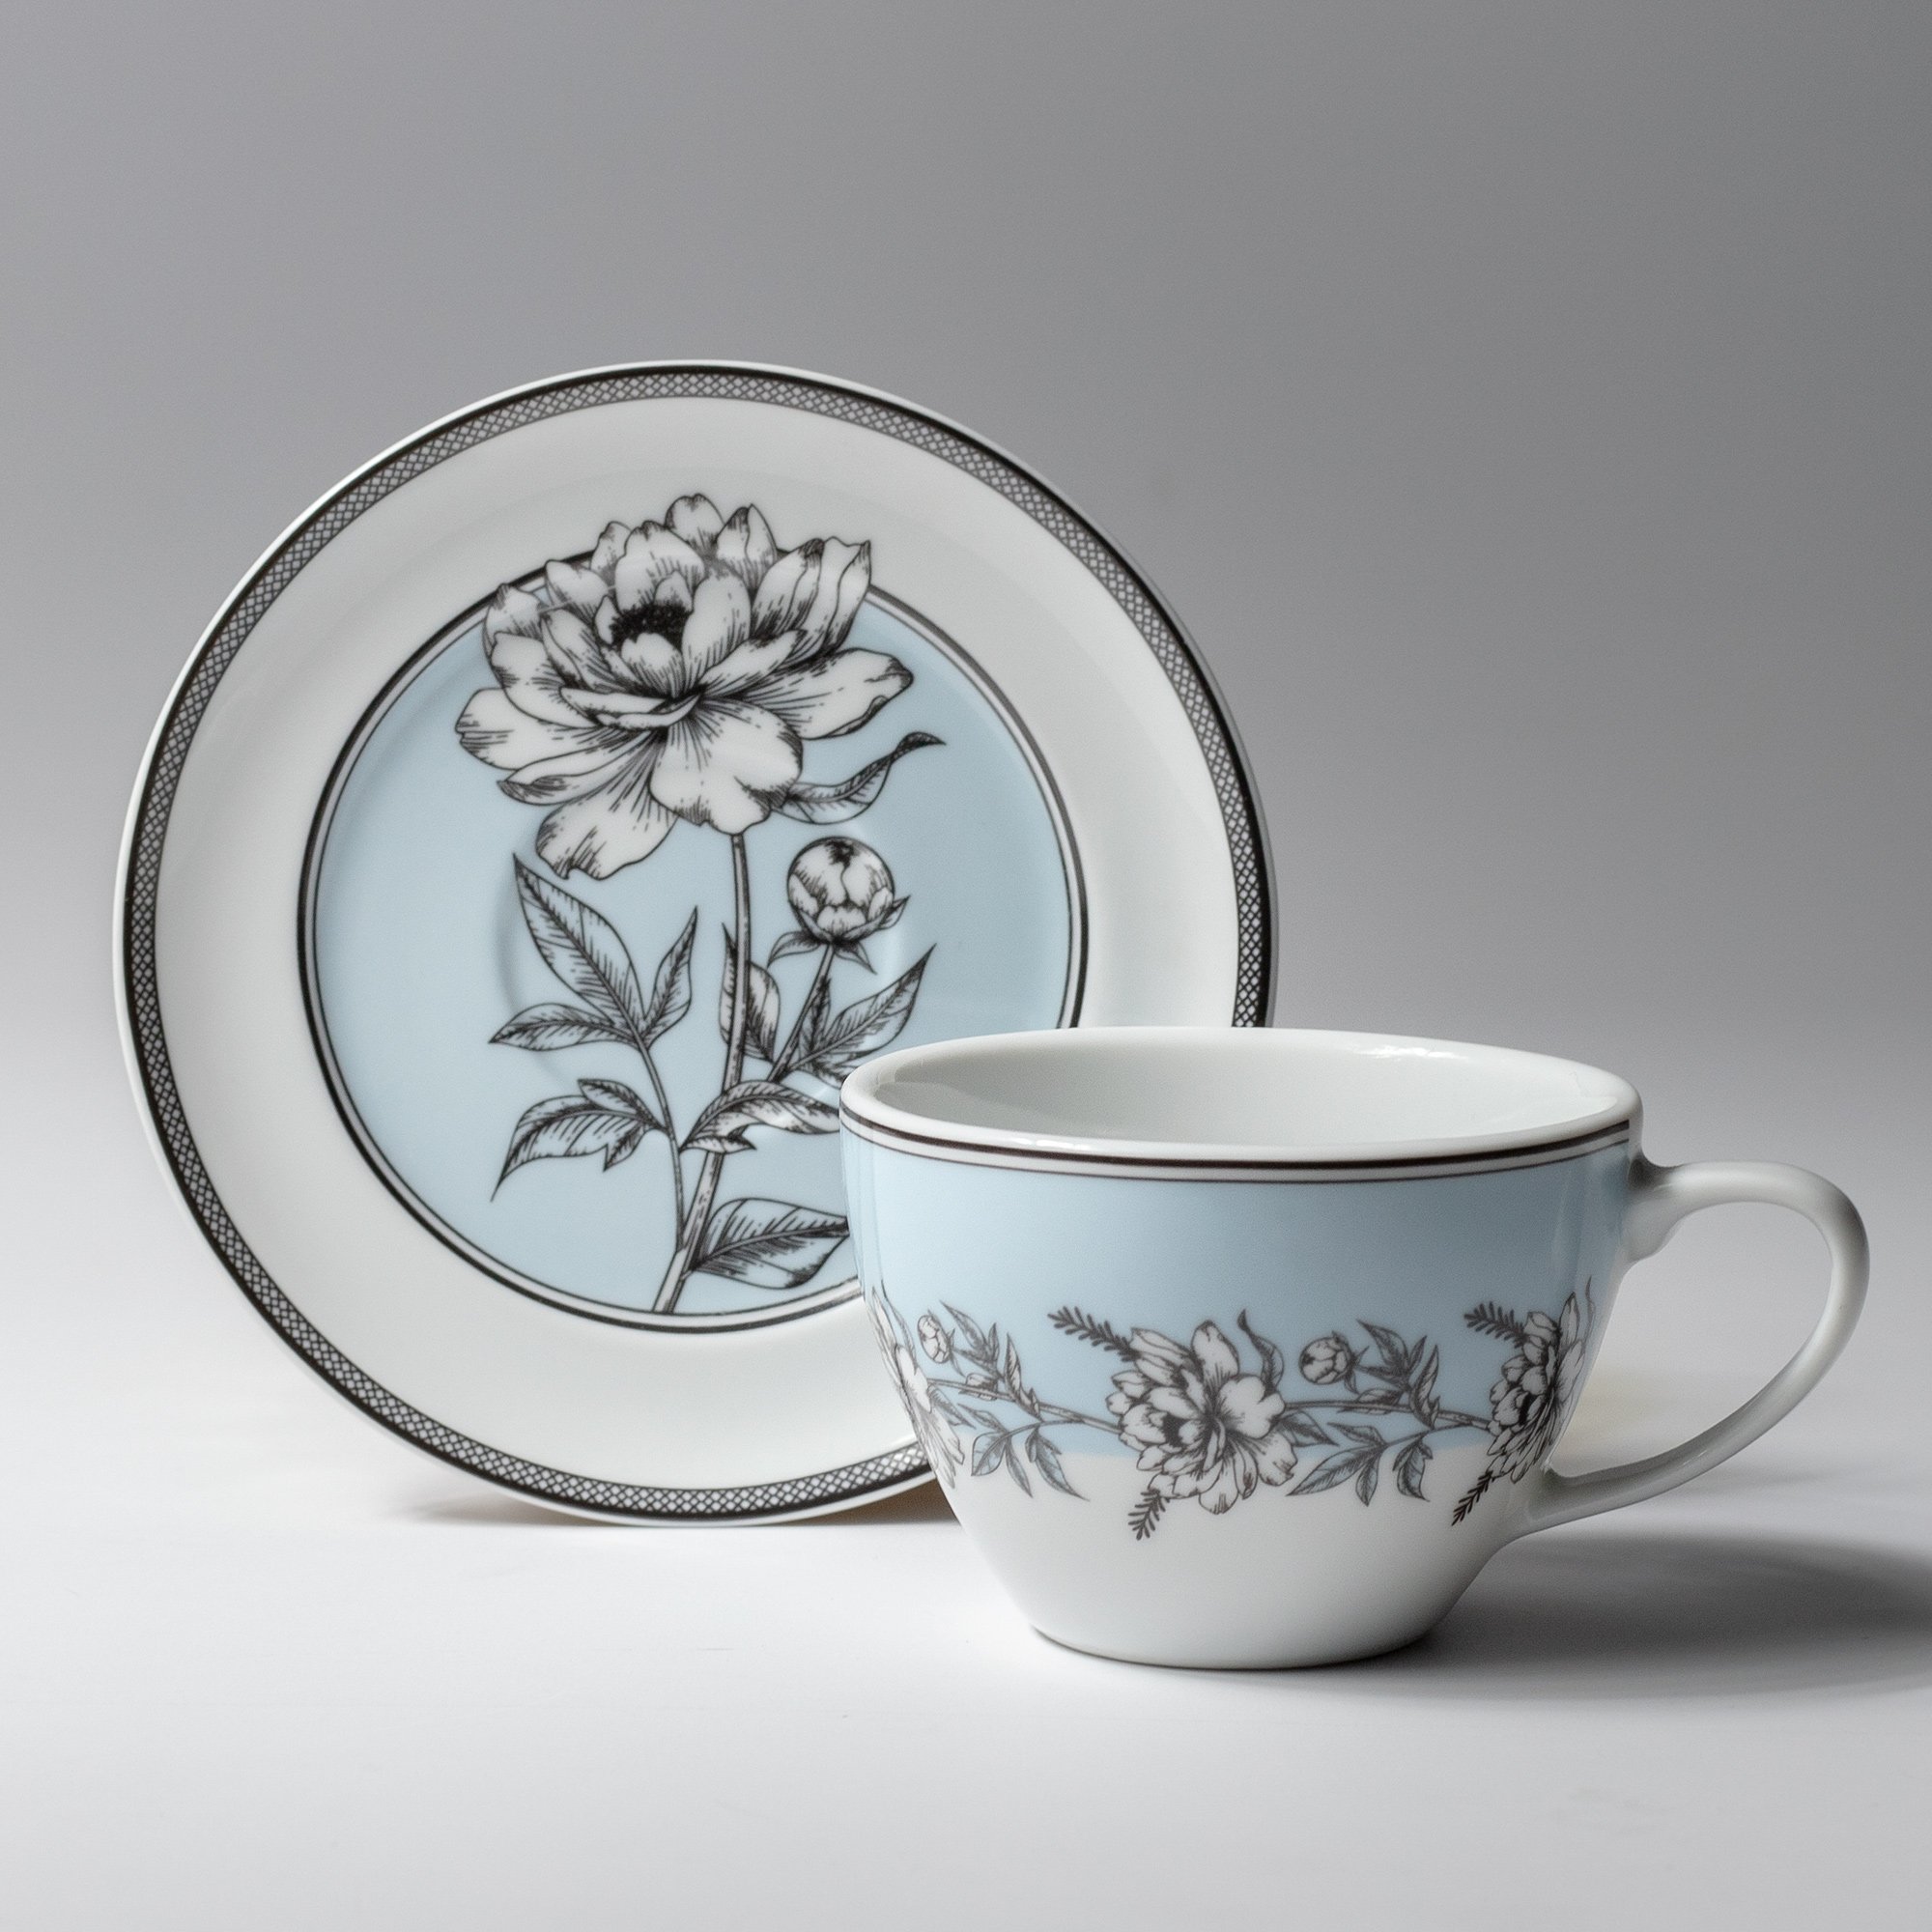 Jogo 6 Xícaras de Chá C/ Pires Anna Germer Porcelana - Estampado